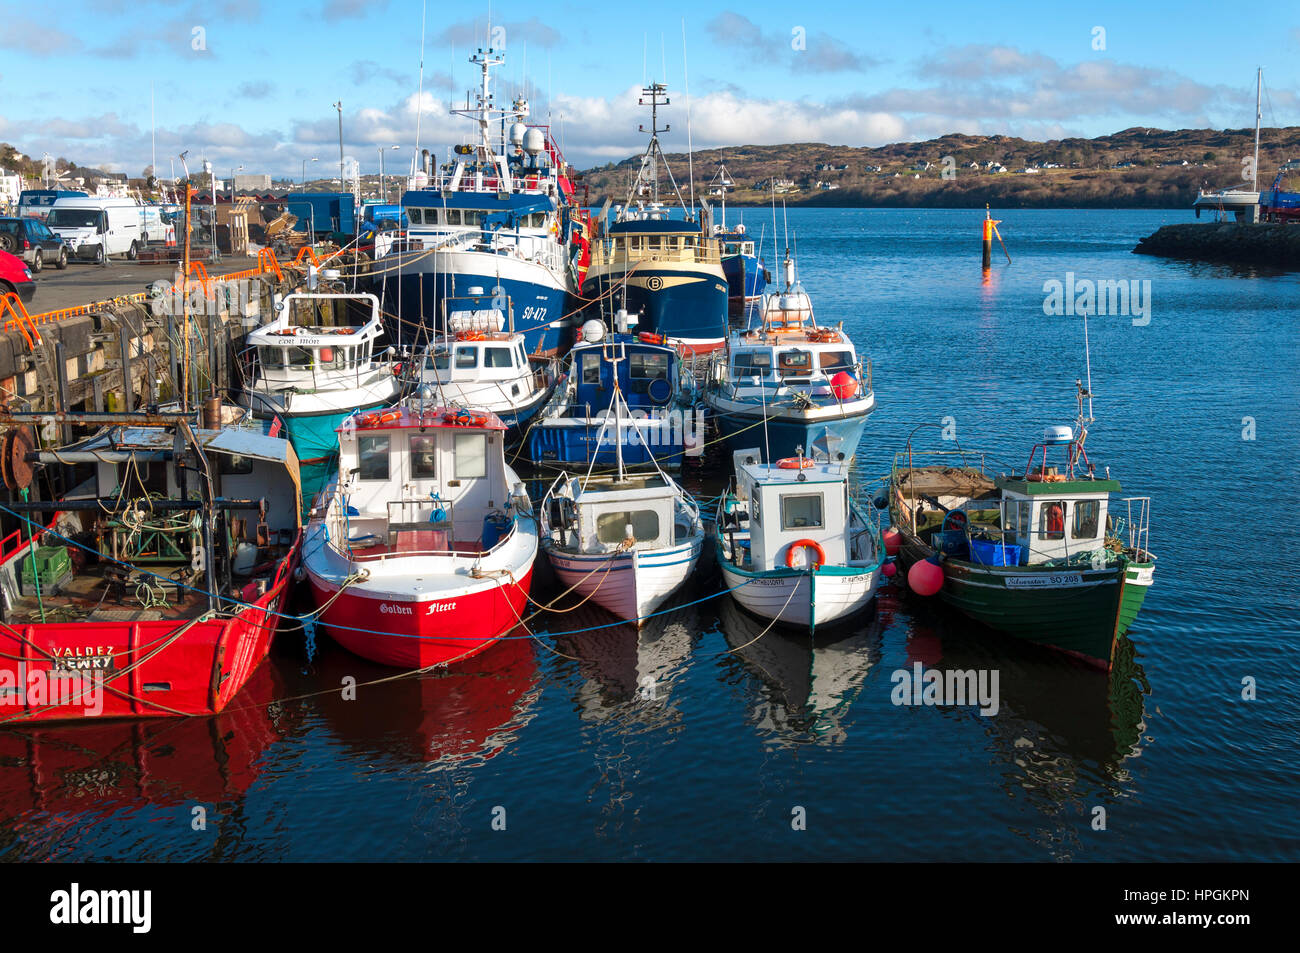 Port de pêche de Killybegs port et bateaux, comté de Donegal, Irlande Banque D'Images